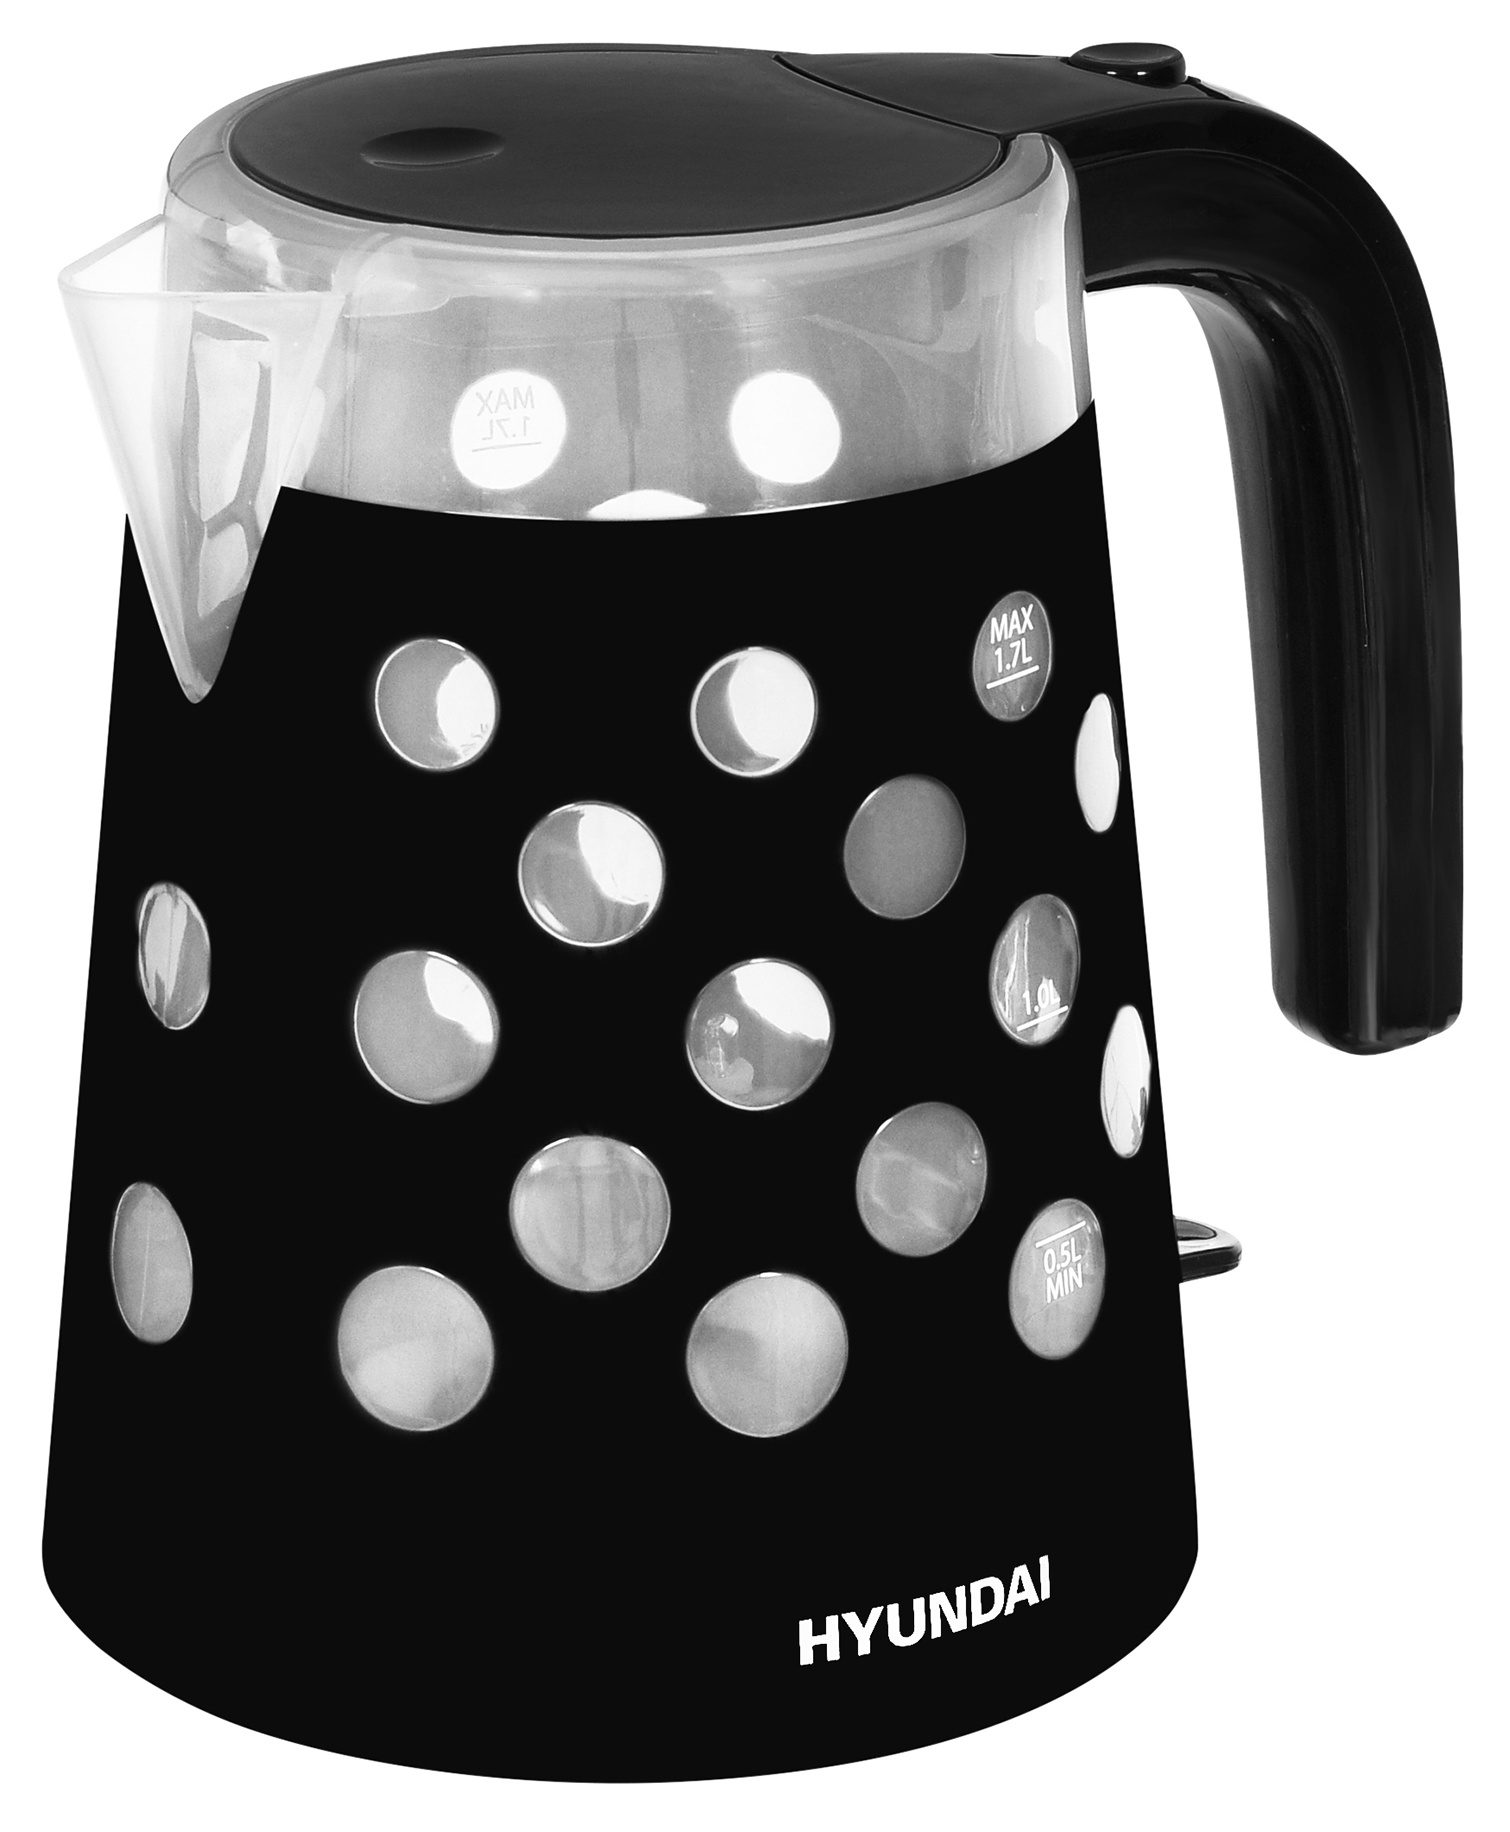 Чайник электрический HYUNDAI HYK-G2012 1.7 л прозрачный, черный чайник электрический hyundai hyk g2012 1 7л 2200вт прозрачный